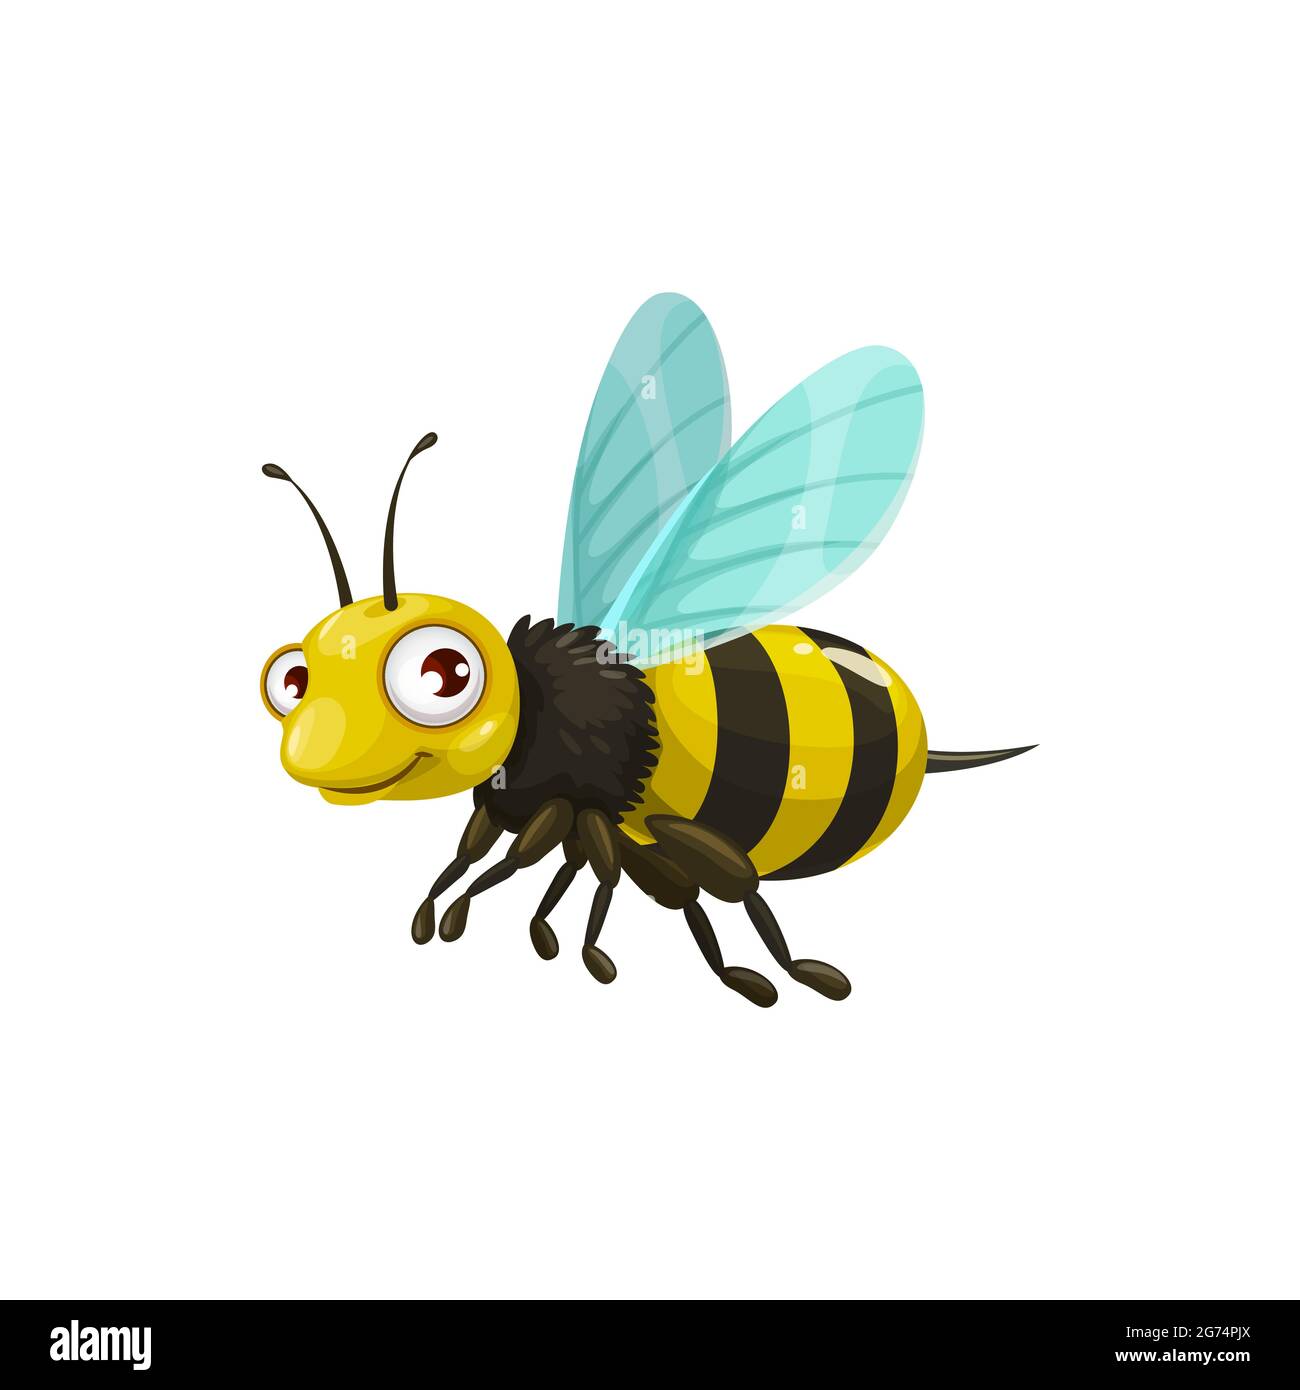 Icona vettore ape cartoon, insetto divertente con corpo a strisce, viso carino e grandi occhi. Miniclub o mascotte apiaria, elemento di design, isolo creatura volante selvatico Illustrazione Vettoriale